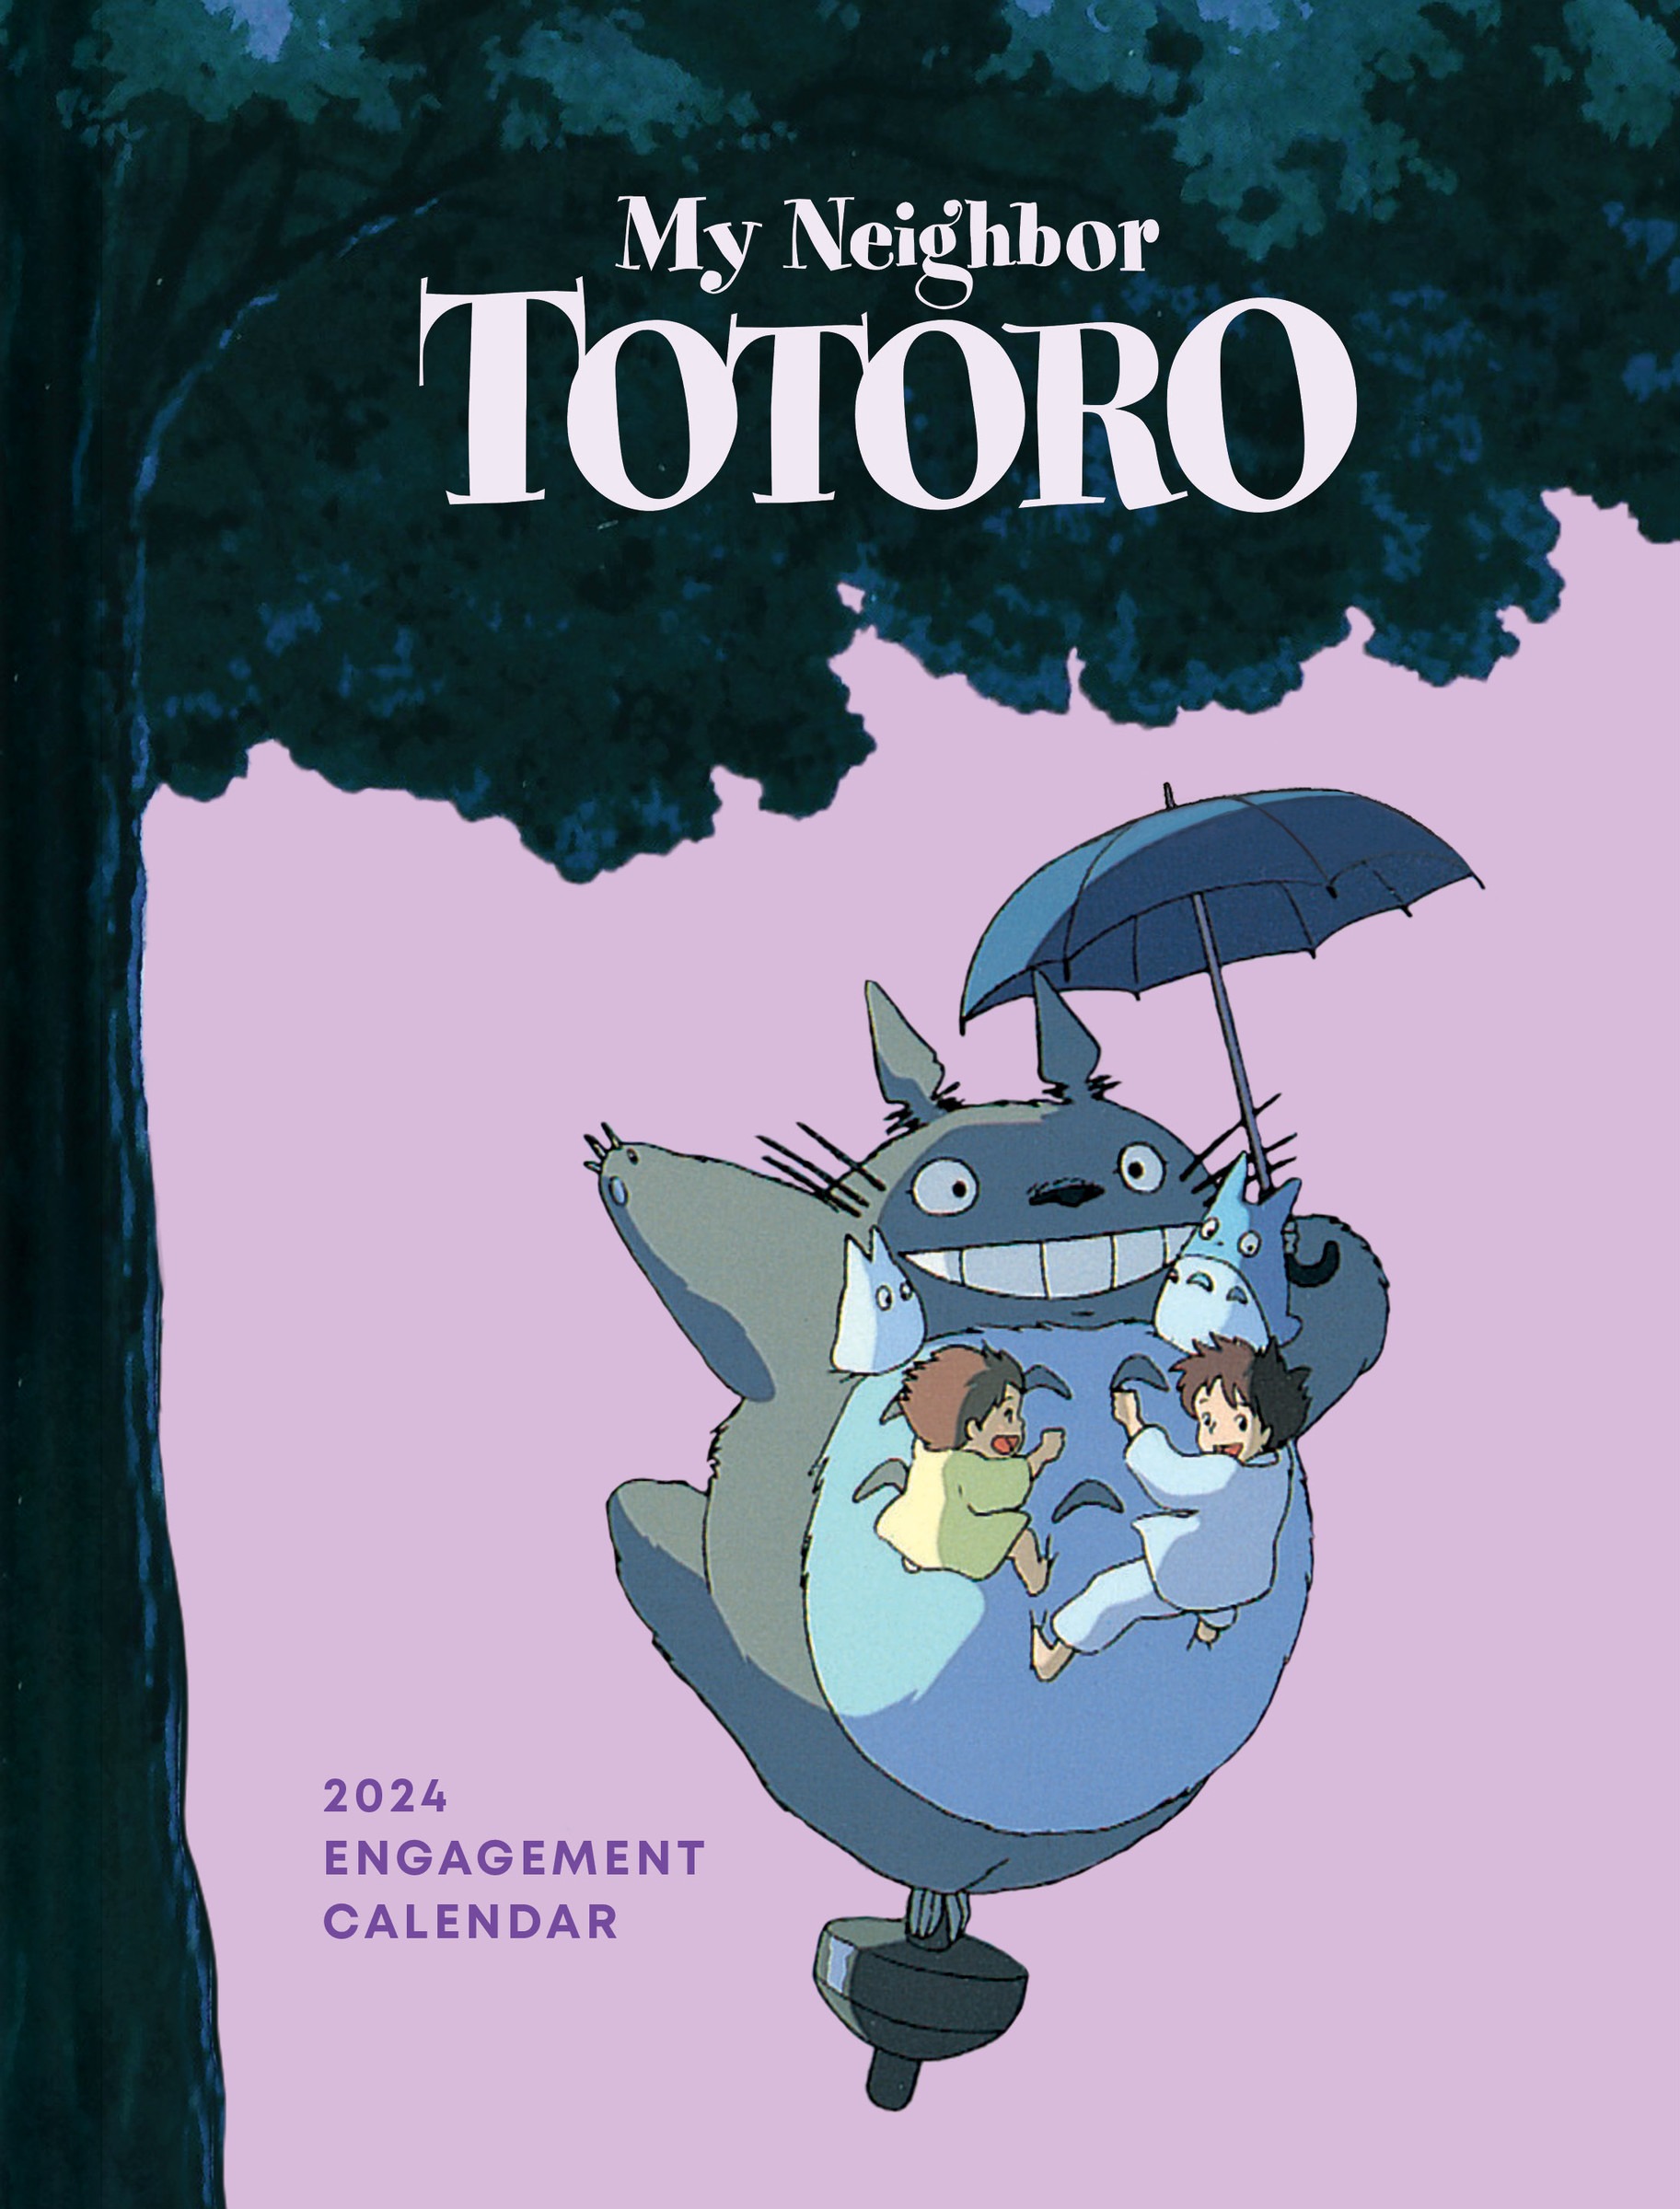 My neighbor Totoro 2024 Agenda and engagement calendar OTaku Manga